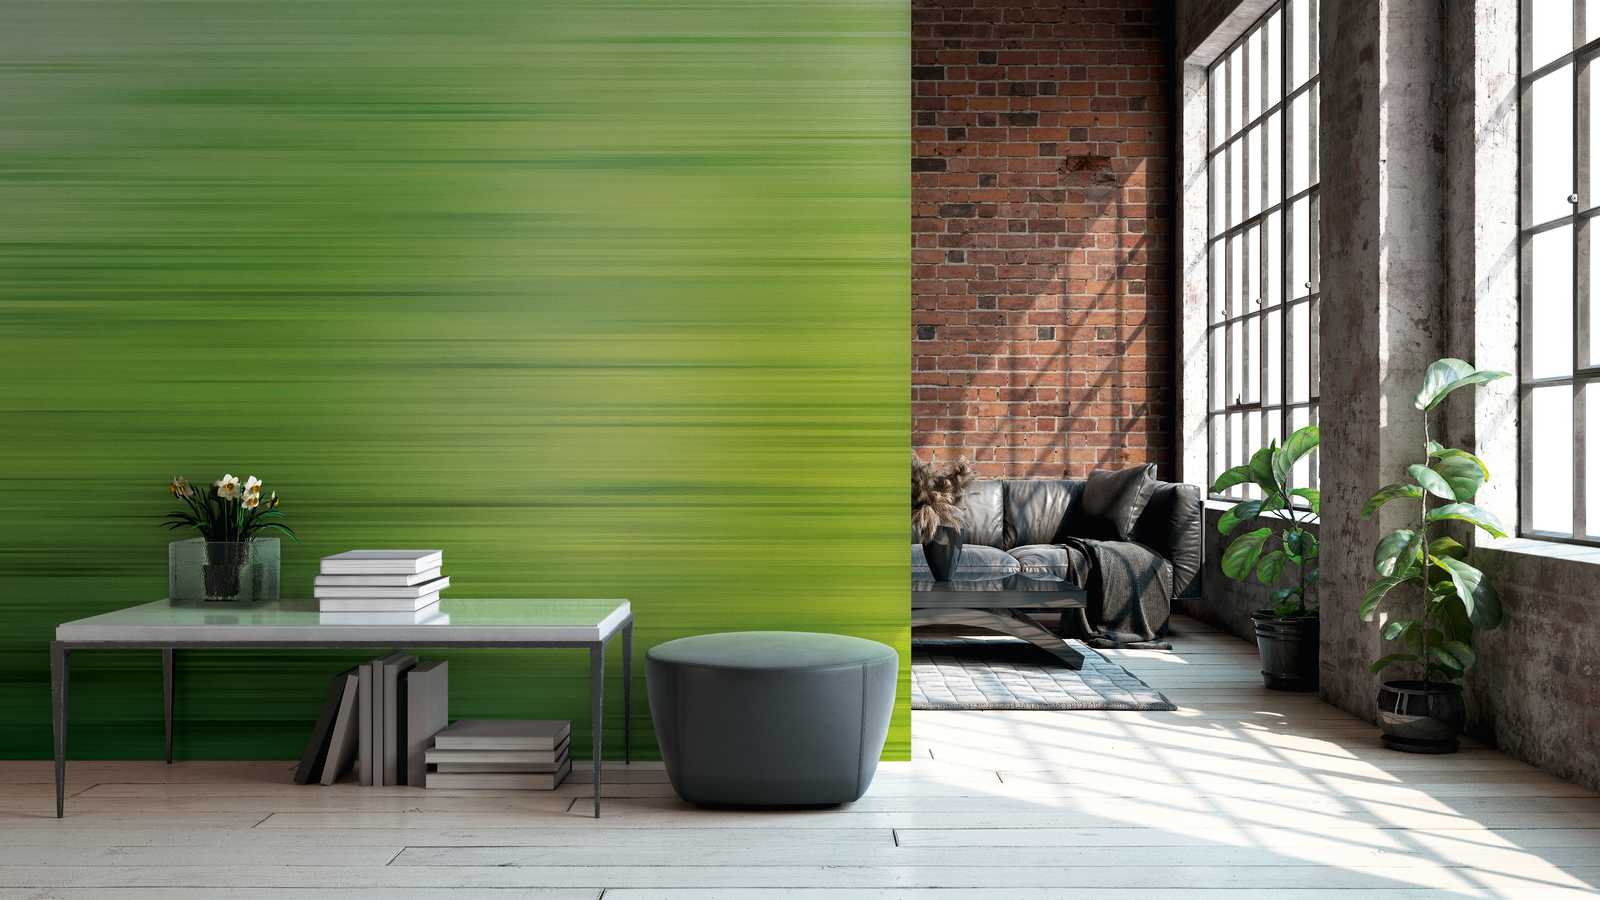             Behang noviteit - groen motief behang met kleurverloop design
        